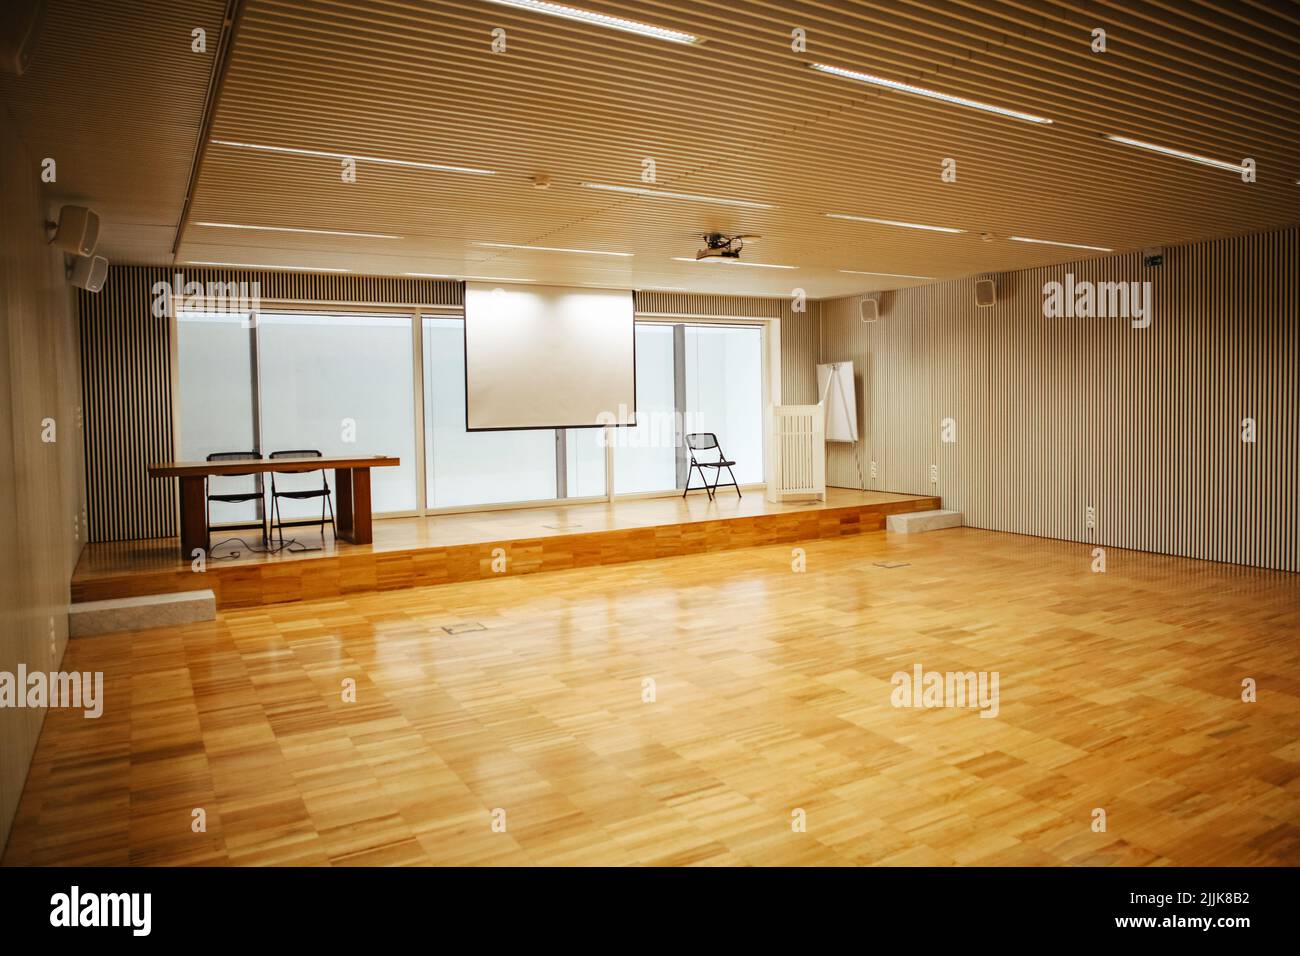 Una sala de conferencias iluminada con una pizarra blanca para presentaciones y espacio para sillas Foto de stock